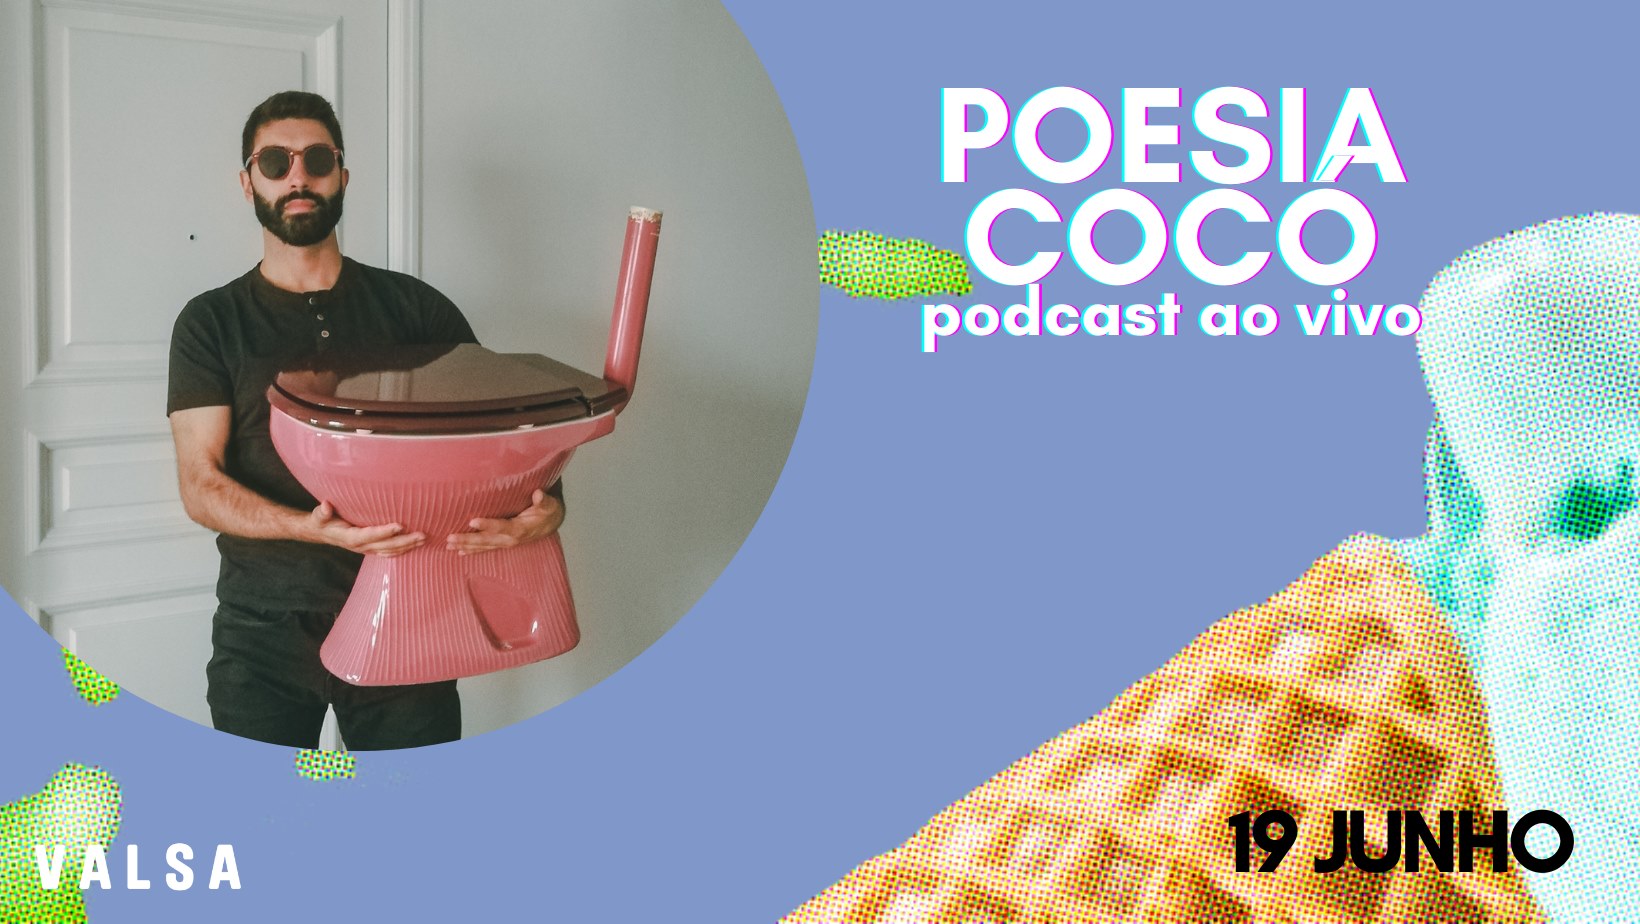 POESIA COCÓ | podcast ao vivo